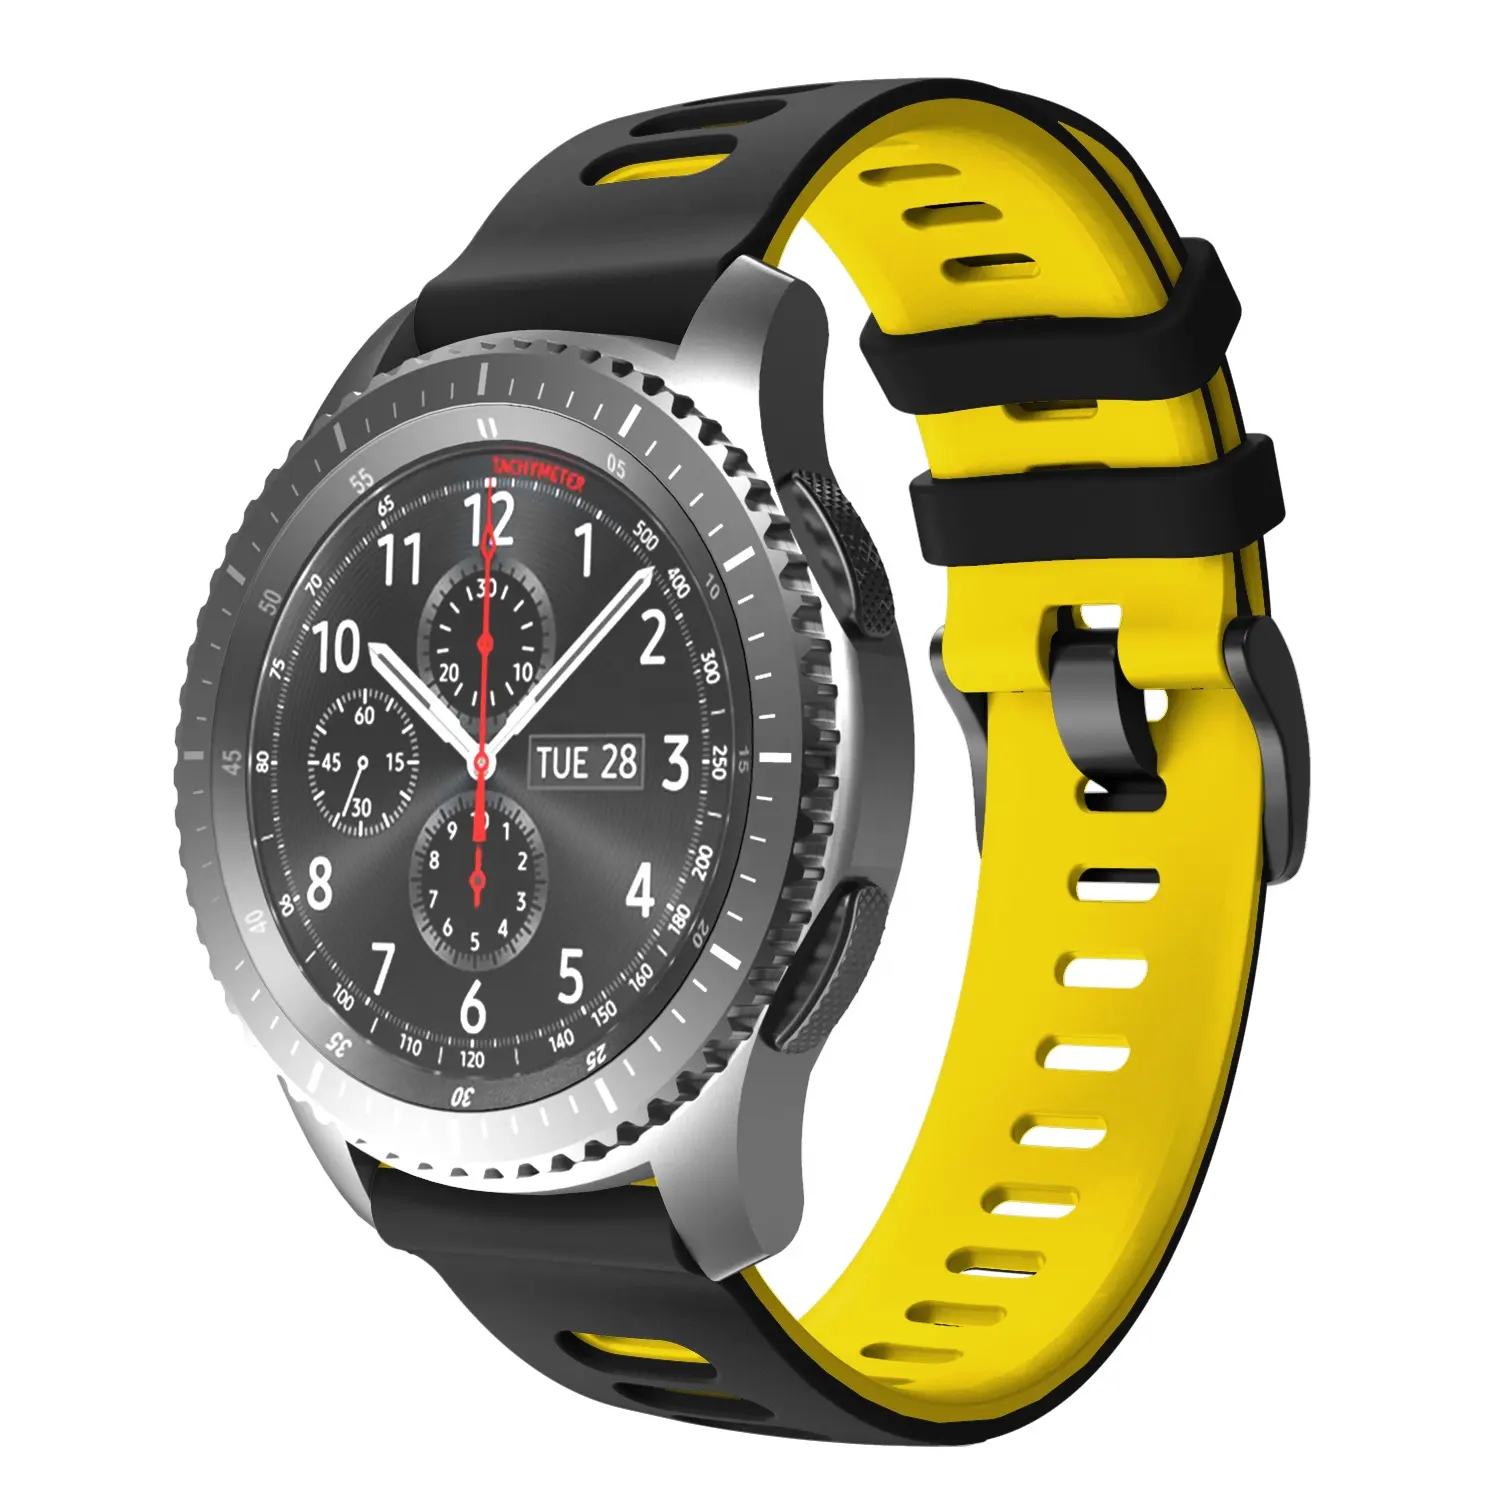 Hochwertiges zweifarbiges Armband für Galaxy Watch 46MM Silikon-Ersatz armband für Samsung Galaxy Gear S3 Armband